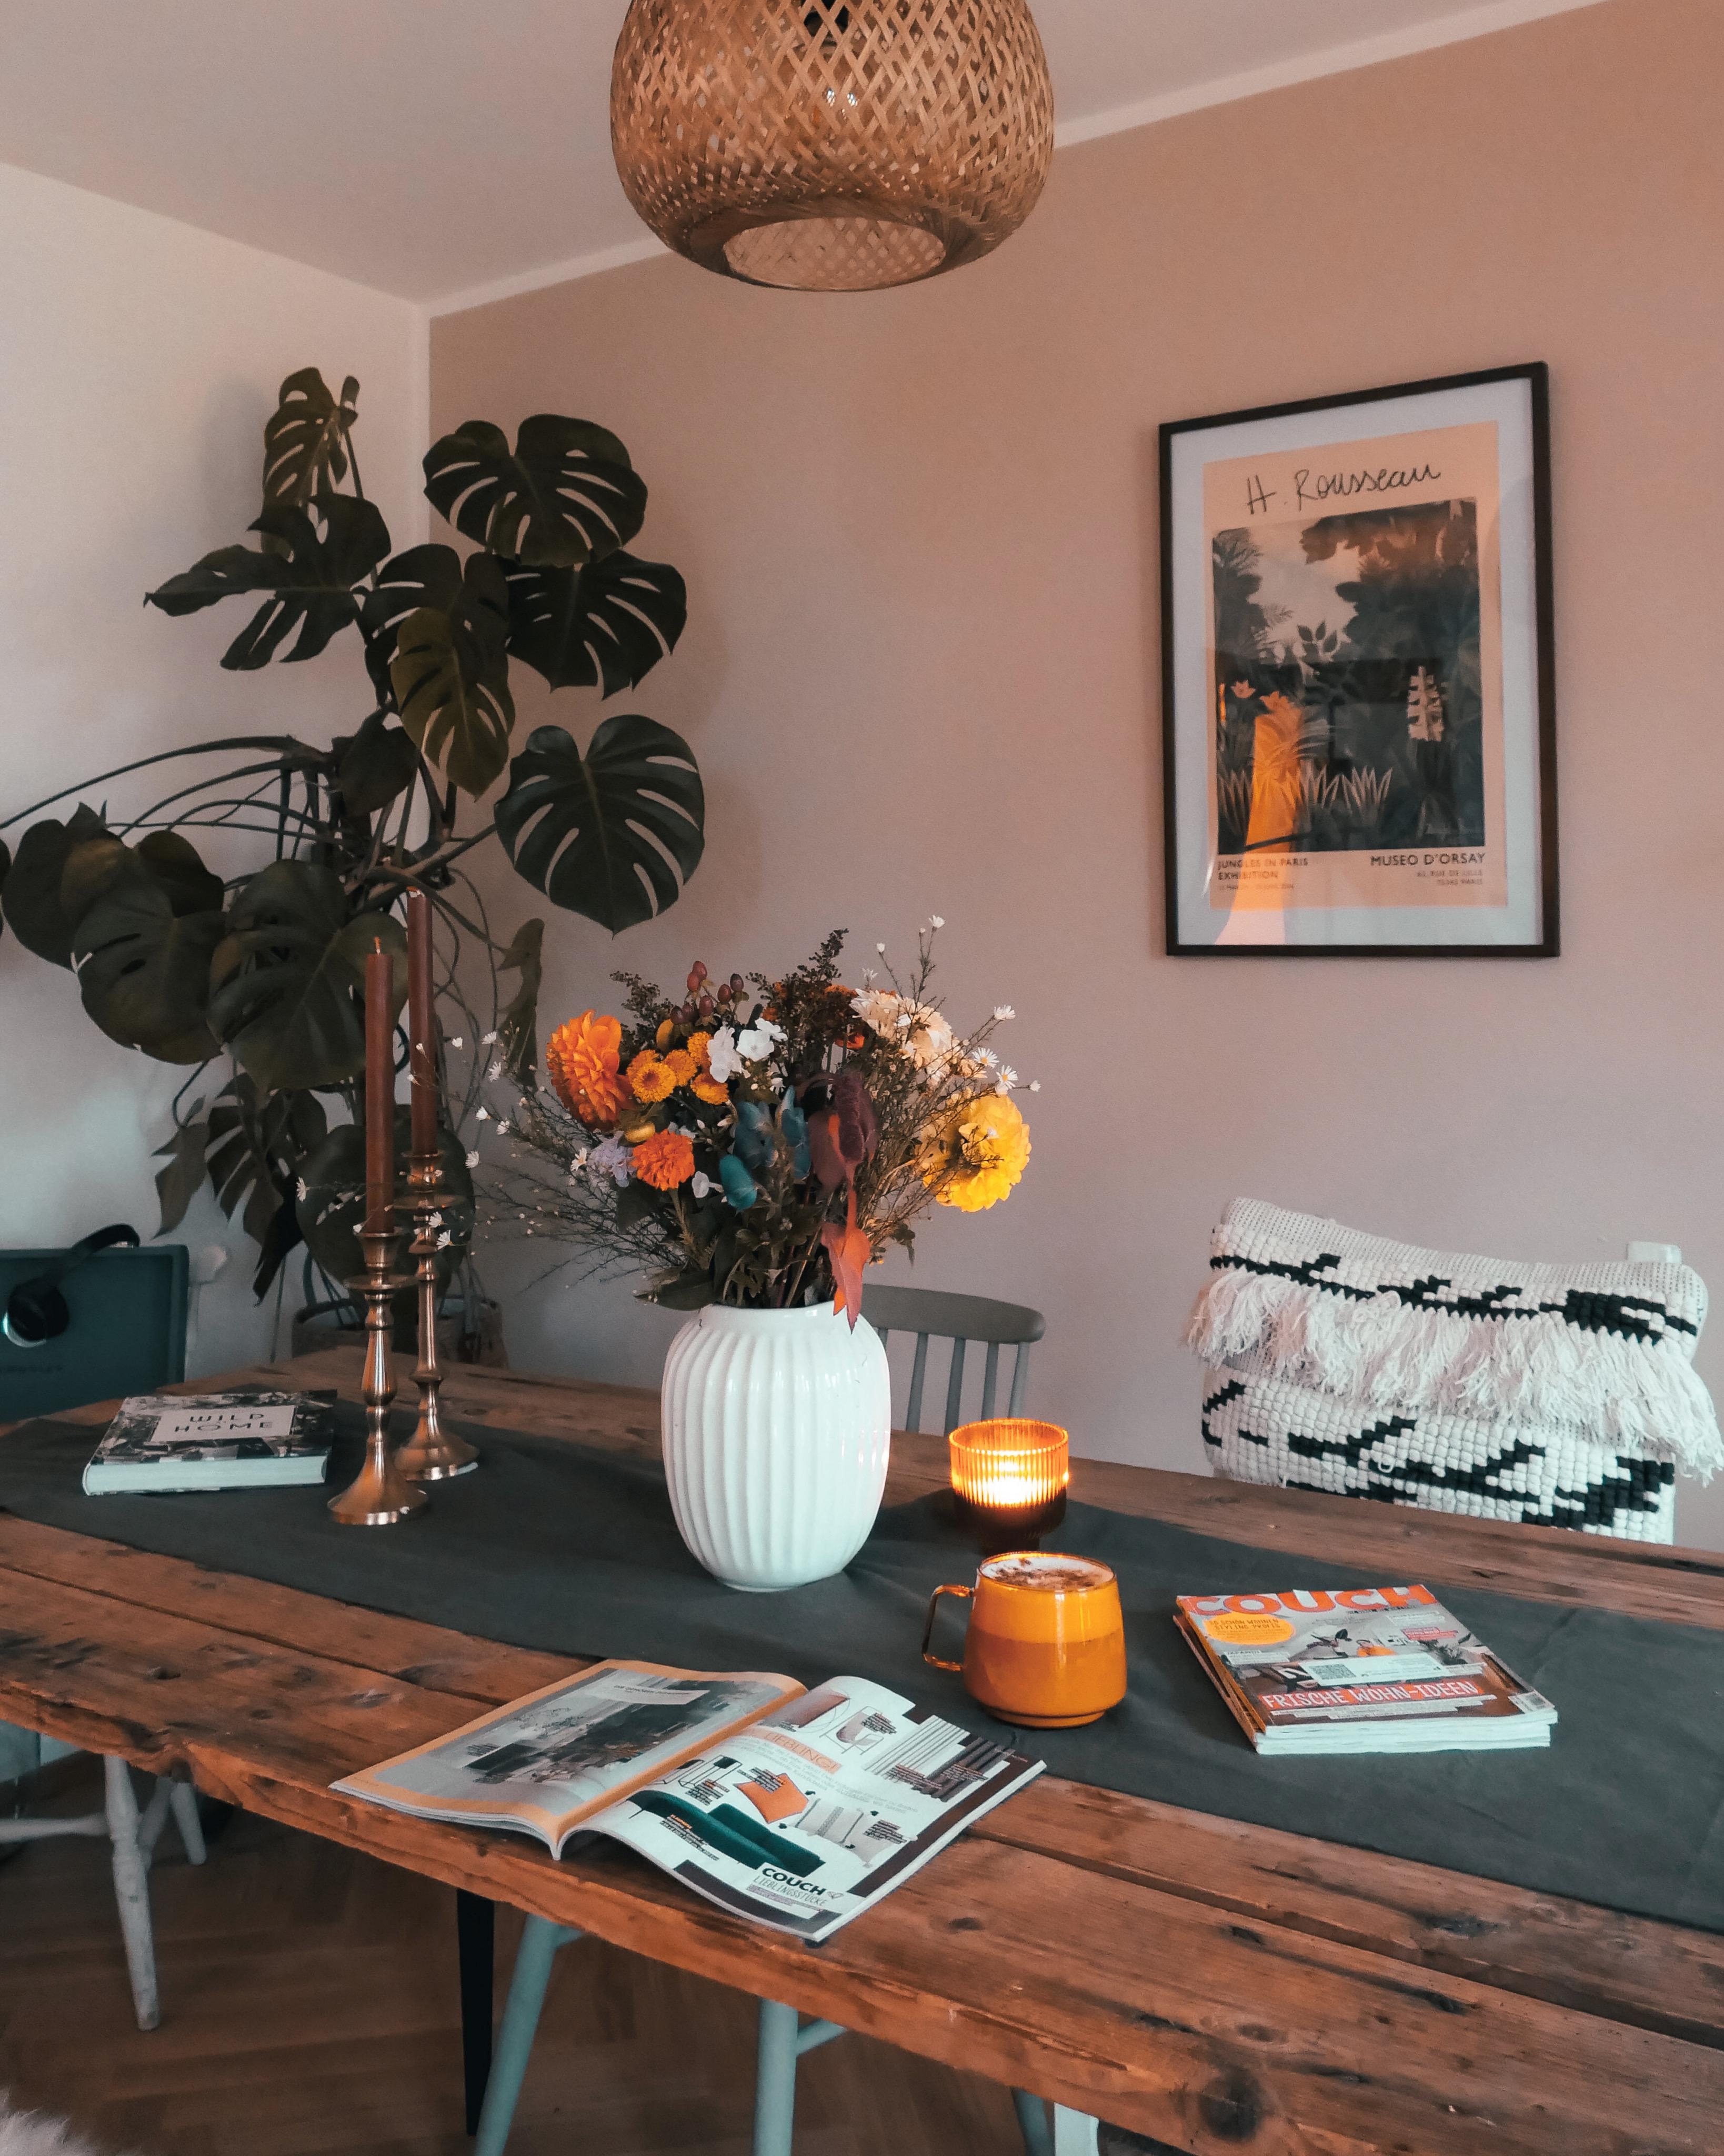 Herbstfeeling 🍁
#blumen #pflanzenliebe #wohnzimmer #esszimmer